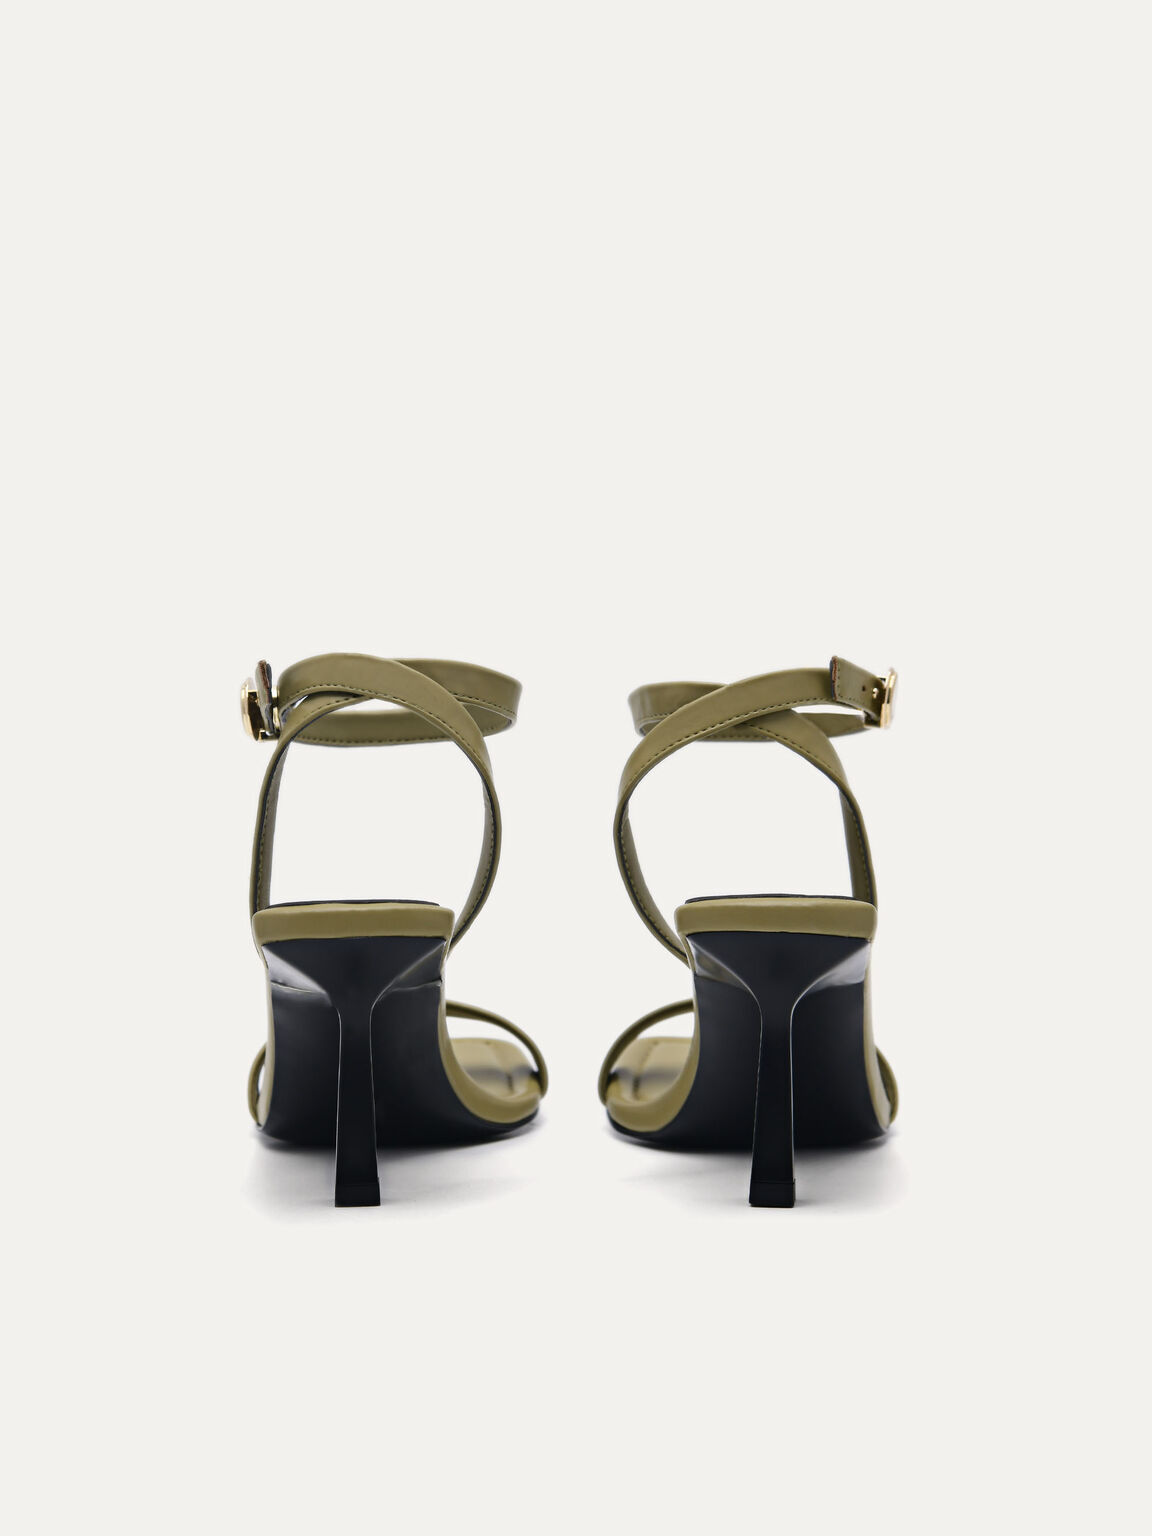 Orb Heel Sandals, Olive